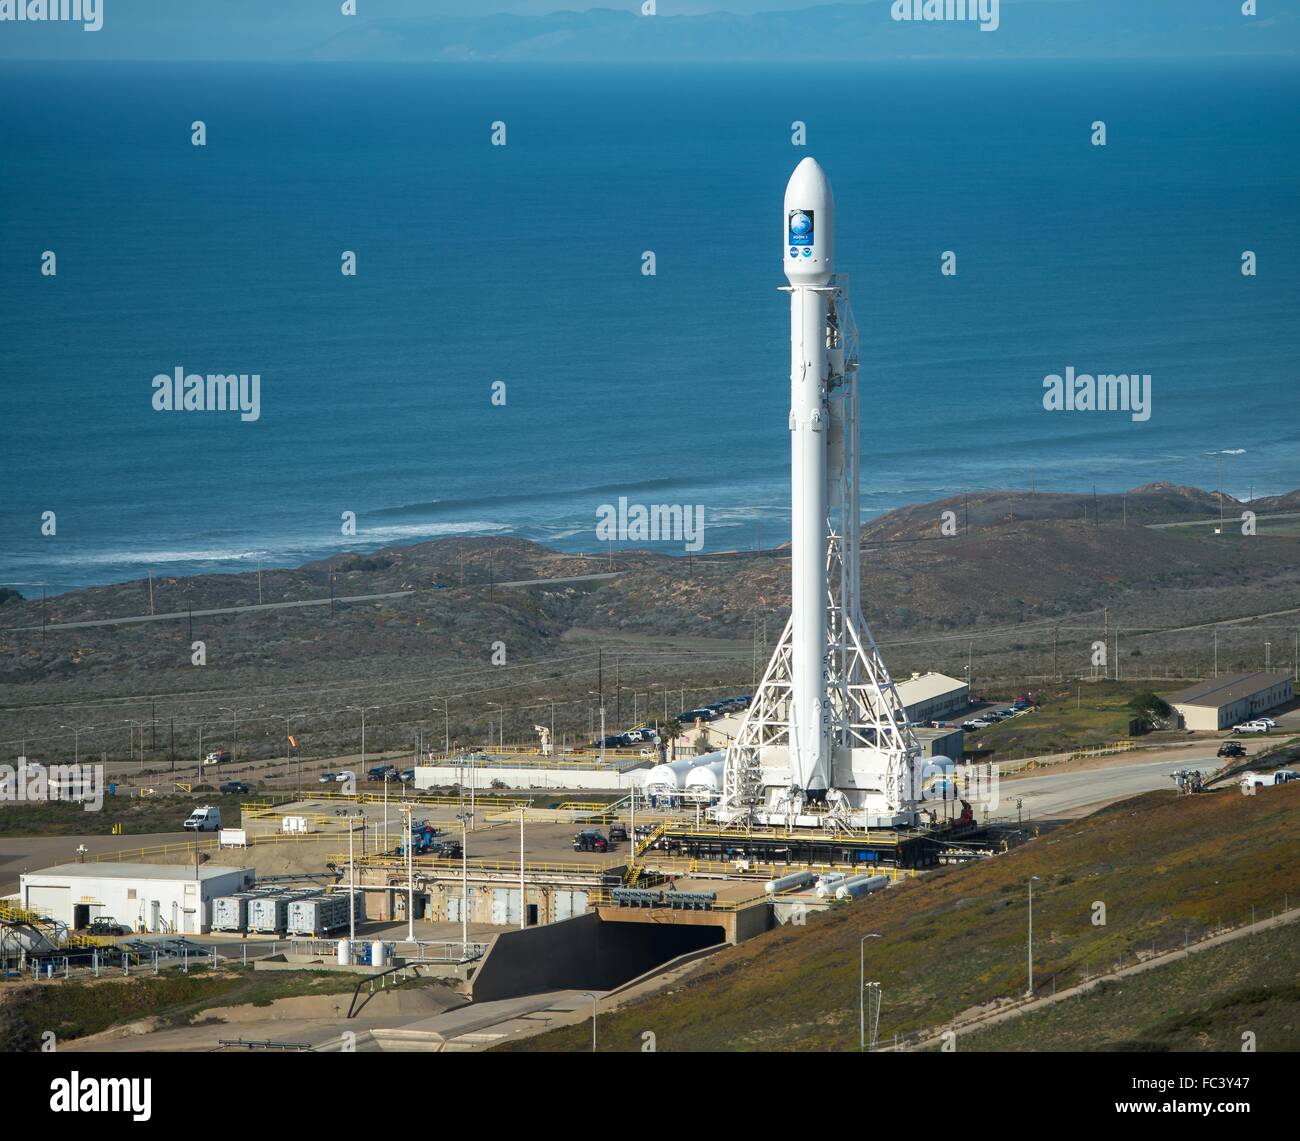 El cohete SpaceX Falcon 9 prepara para su lanzamiento con el Jason-3 a bordo de naves espaciales en la base de la Fuerza Aérea Vandenberg en el Complejo de Lanzamiento Espacial 4 East, 16 de enero de 2016 en la base Vandenberg, California. Foto de stock